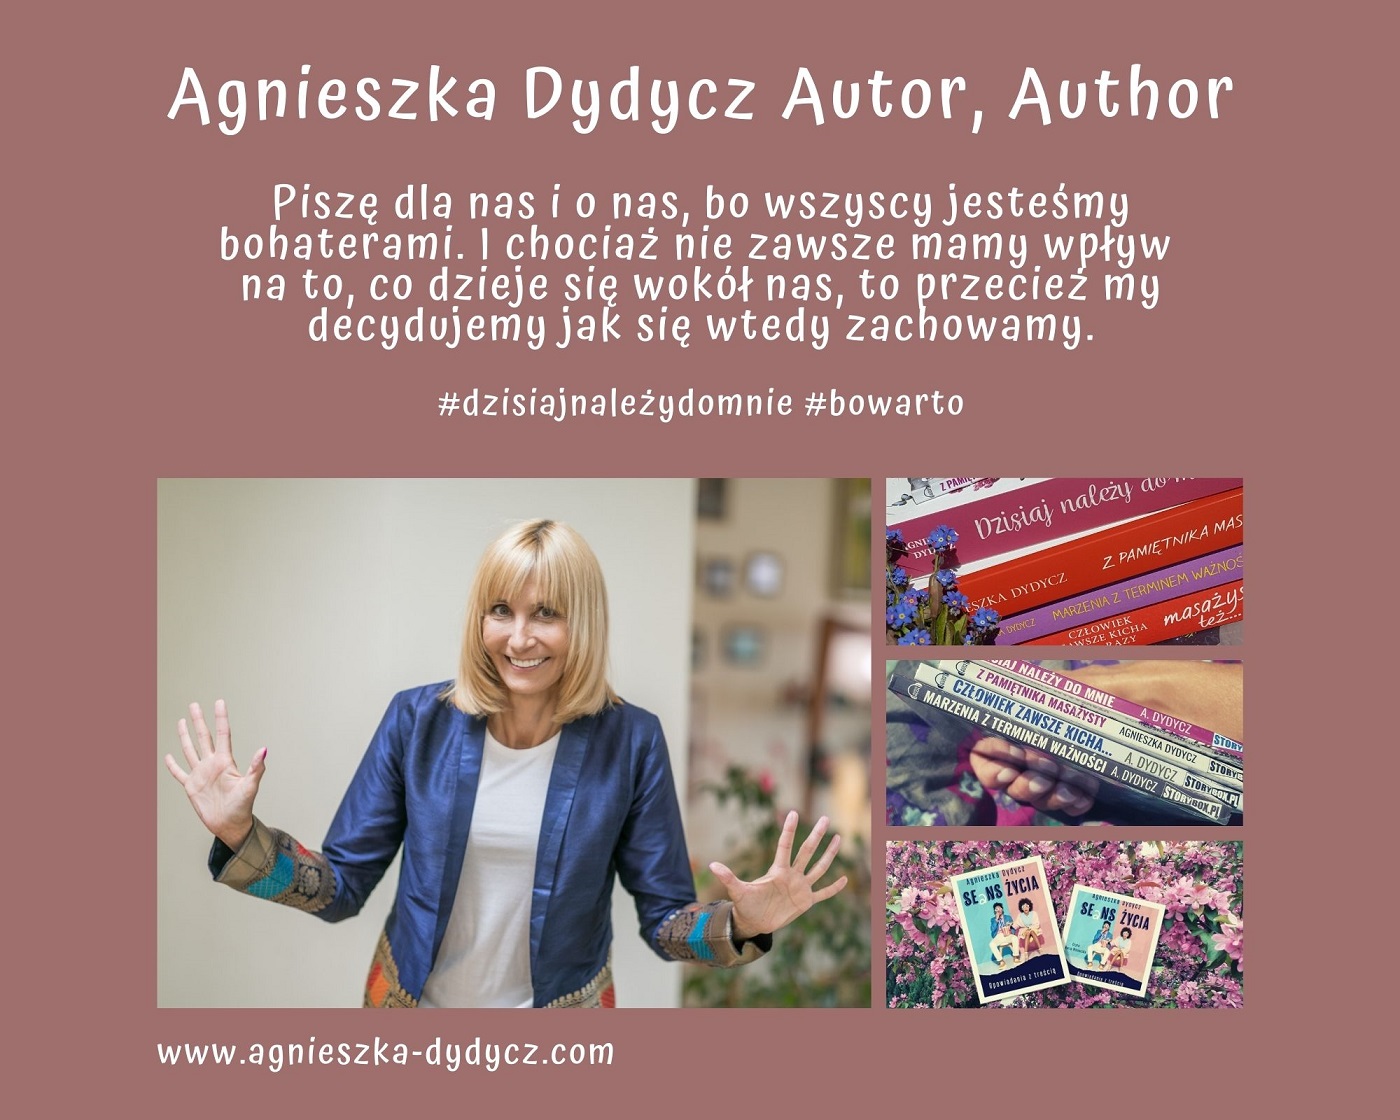 Agnieszka Dydycz Autor, Author